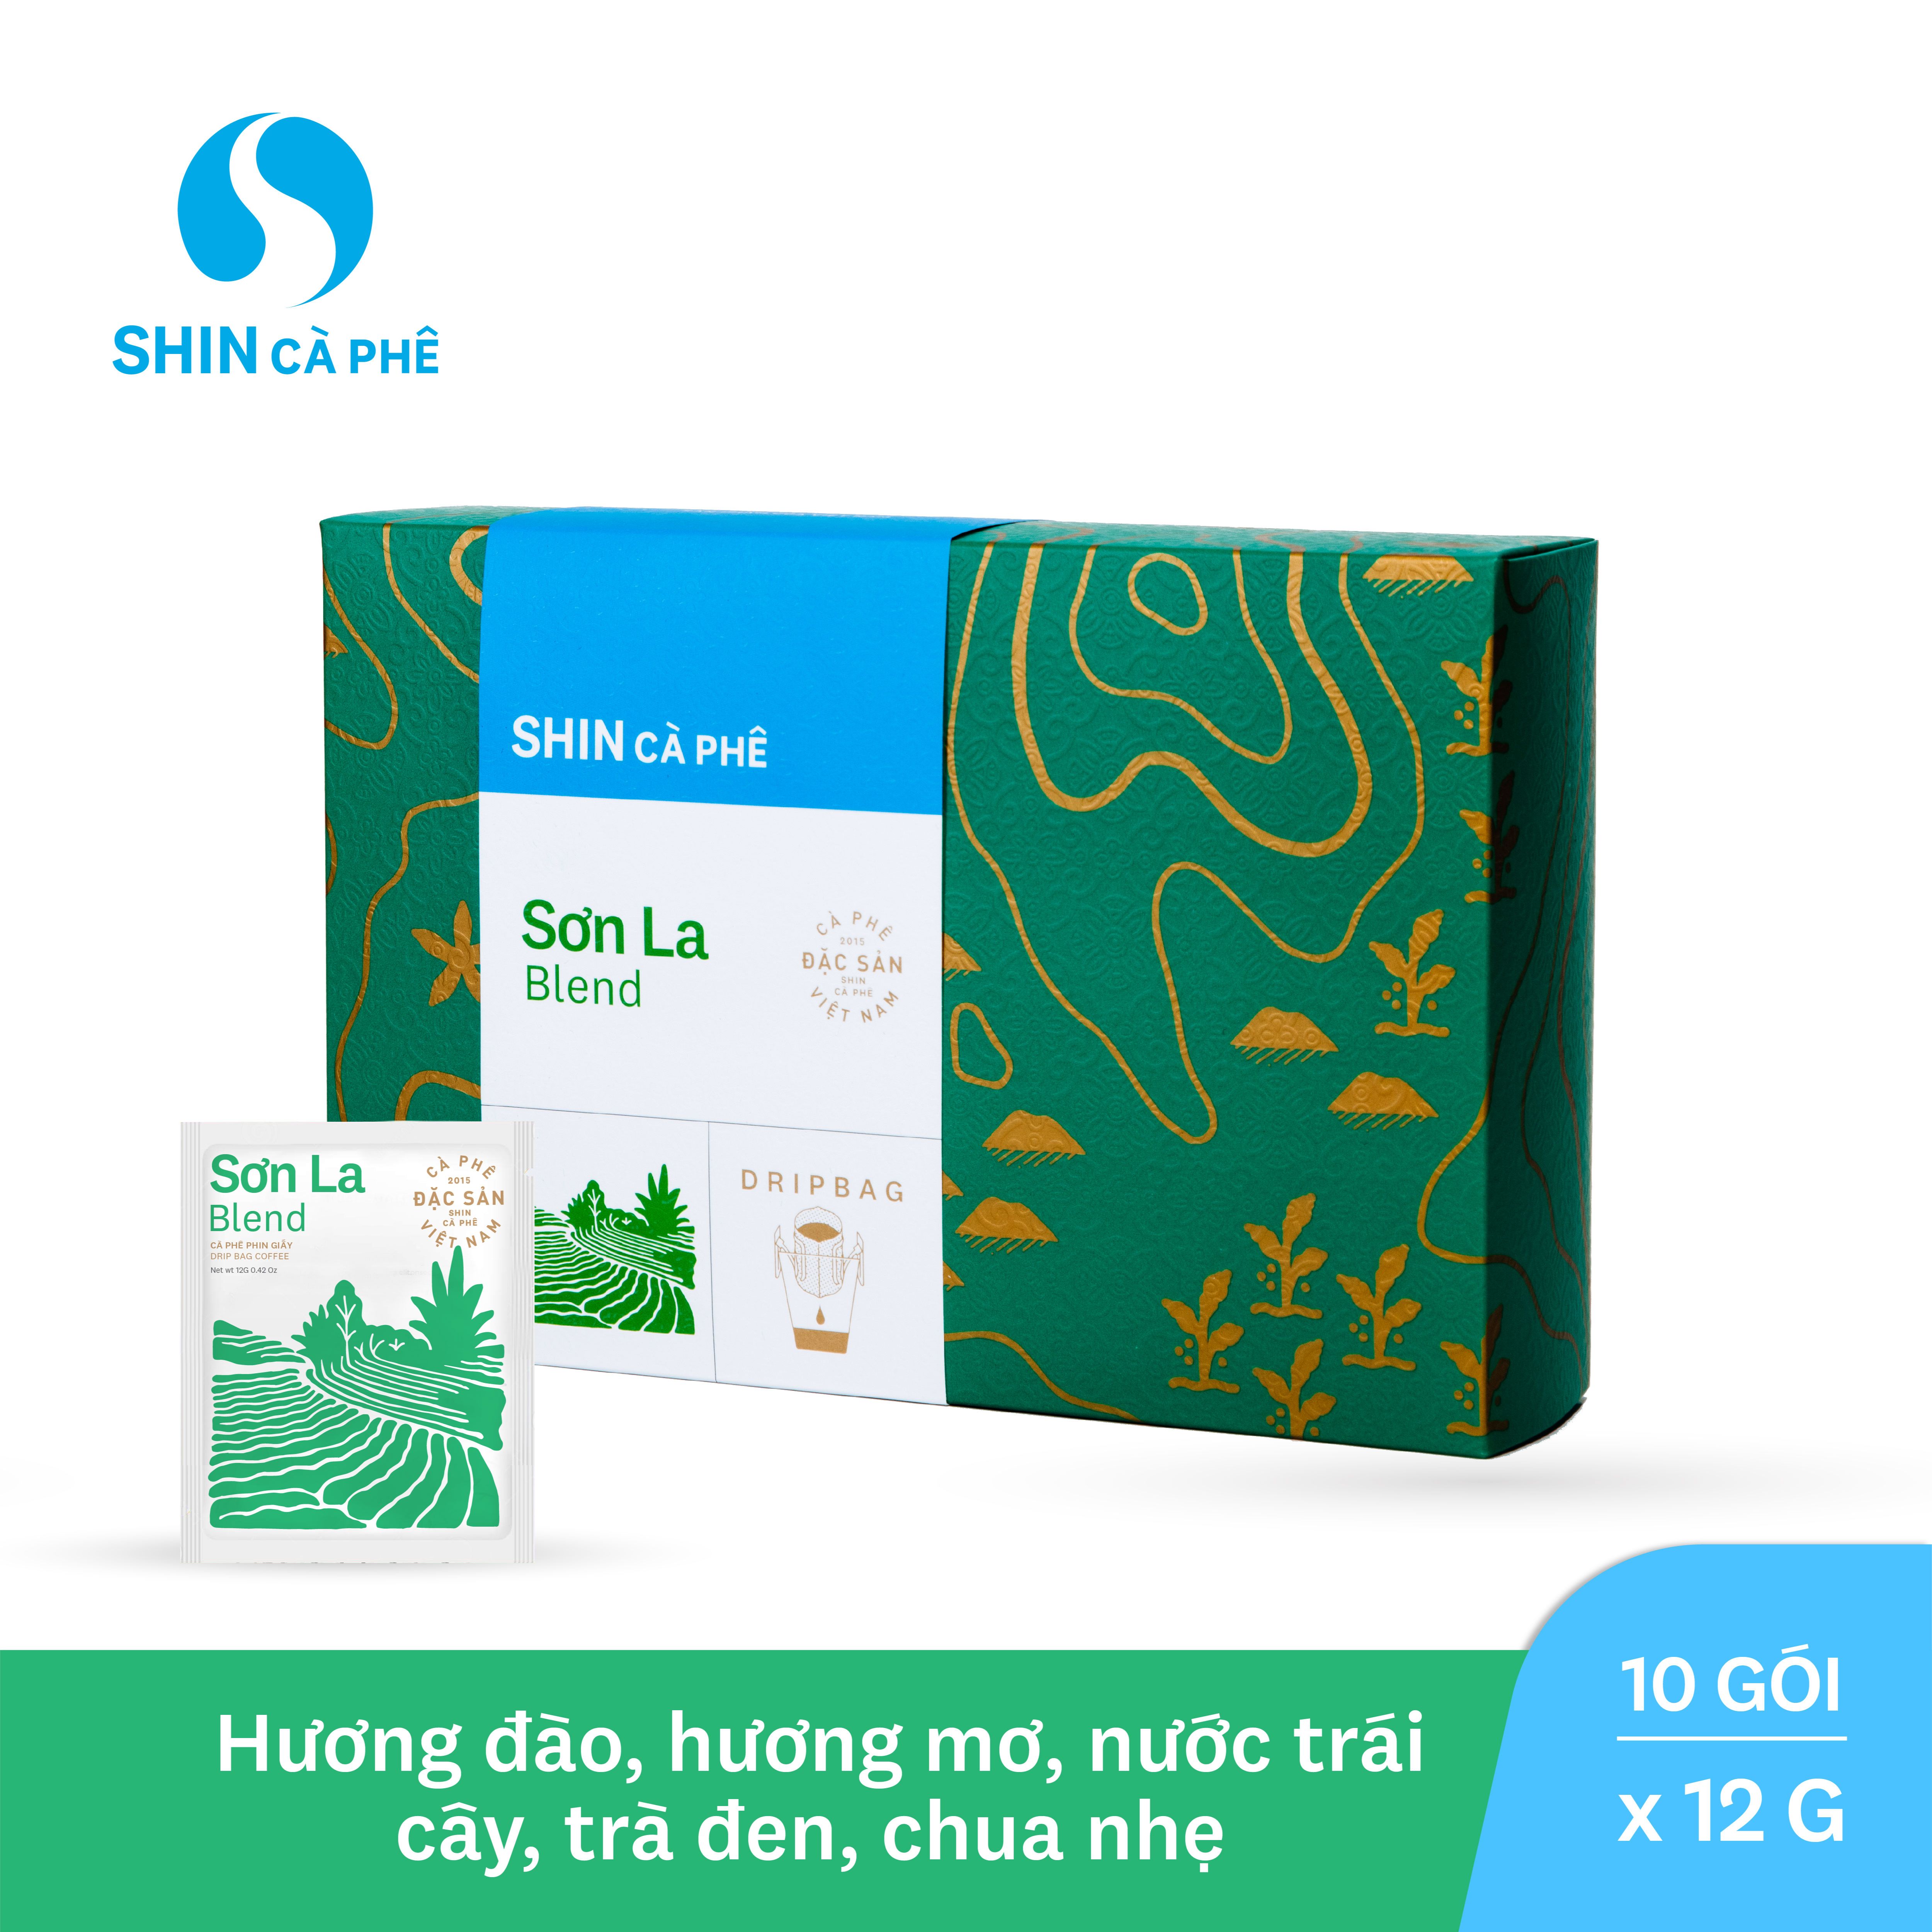 SHIN Cà Phê - Sơn La Blend phin giấy tiện lợi - DripBag hộp 10 gói